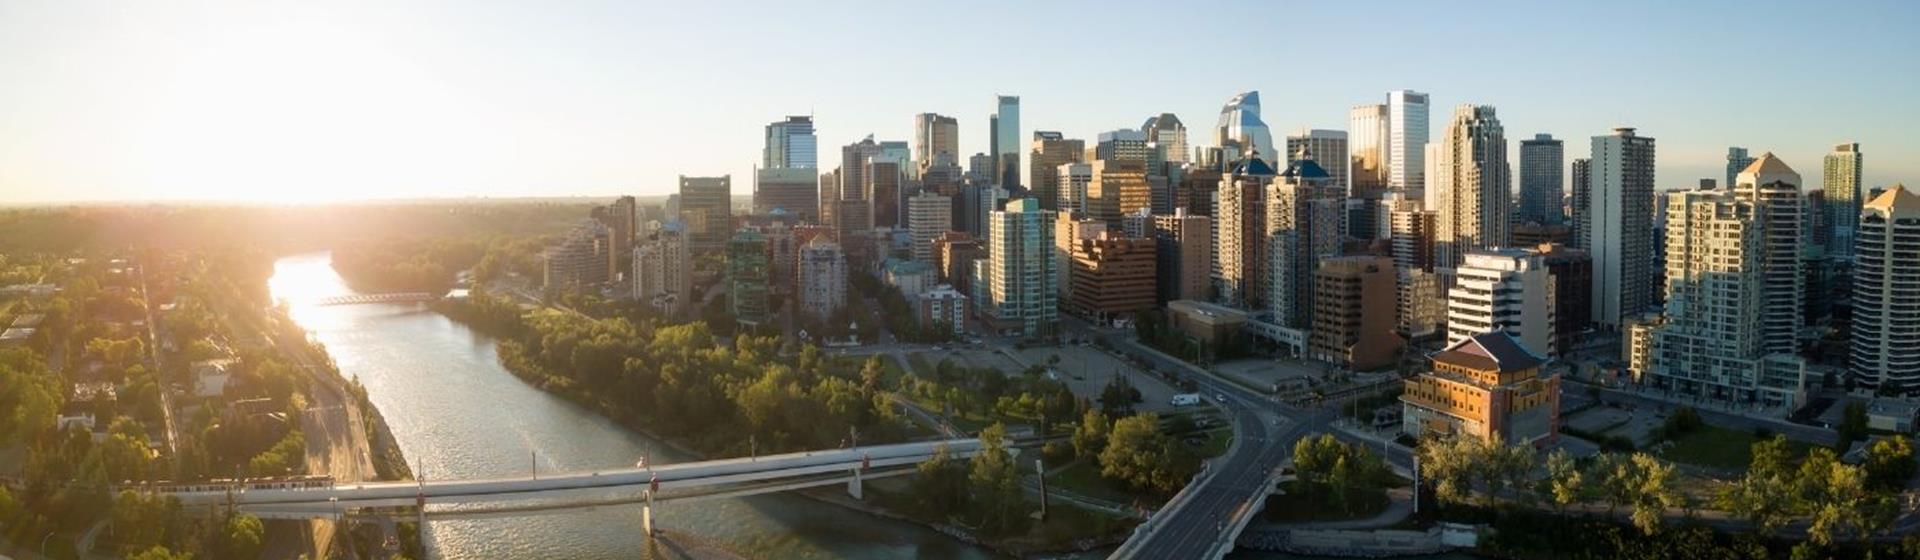 Holidays & City Breaks to Calgary